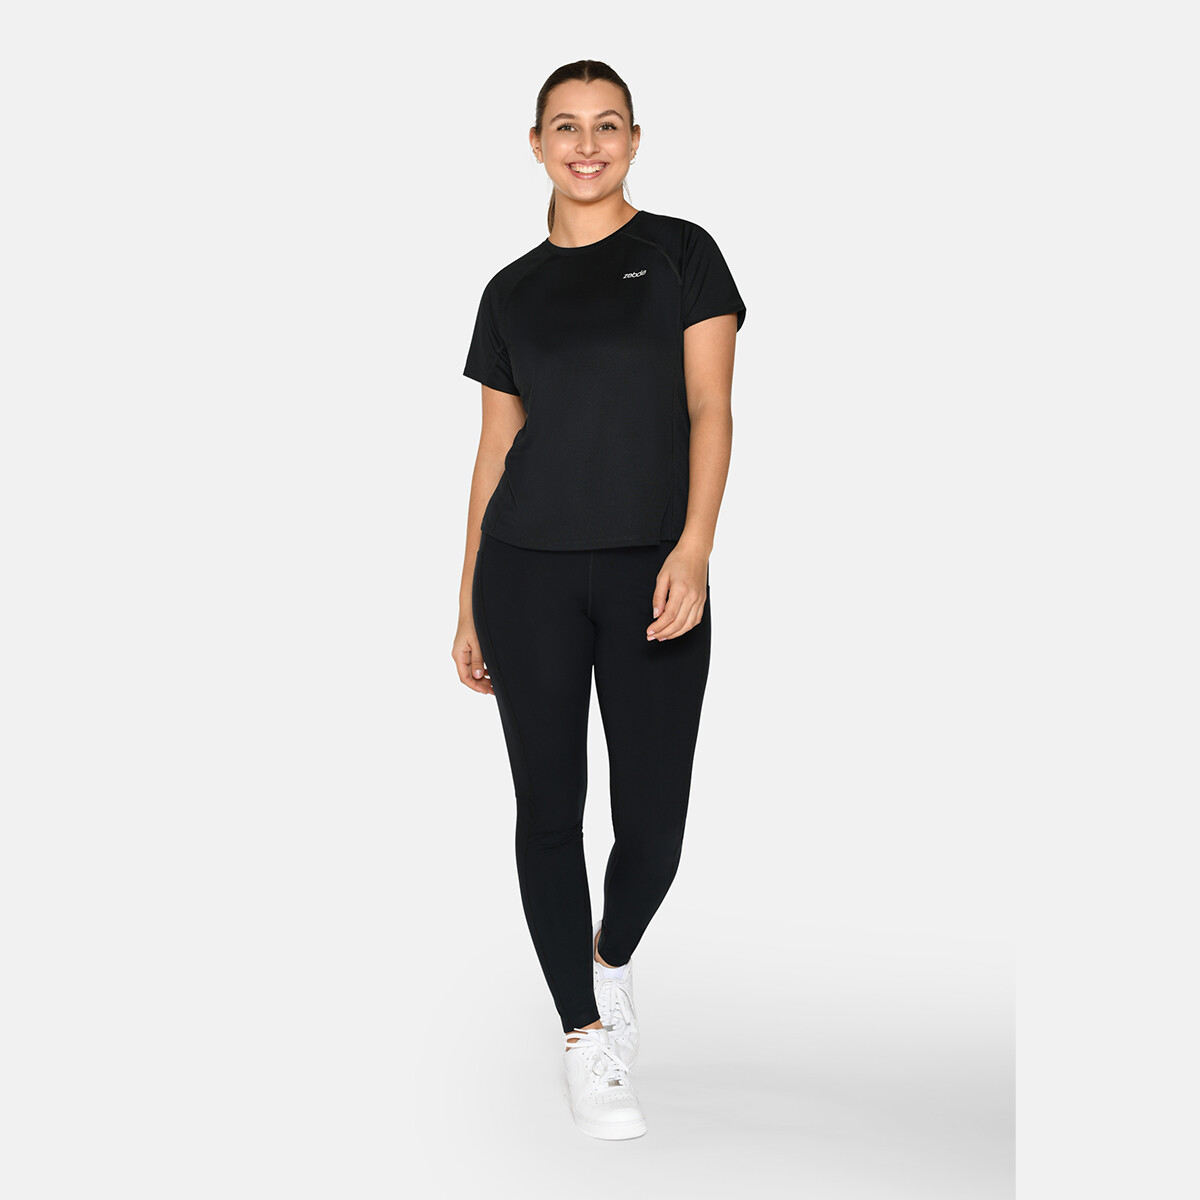 Billede af Zebdia Women Sports T-shirt, Farve: Sort, Størrelse: XL, Dame hos Netlingeri.dk